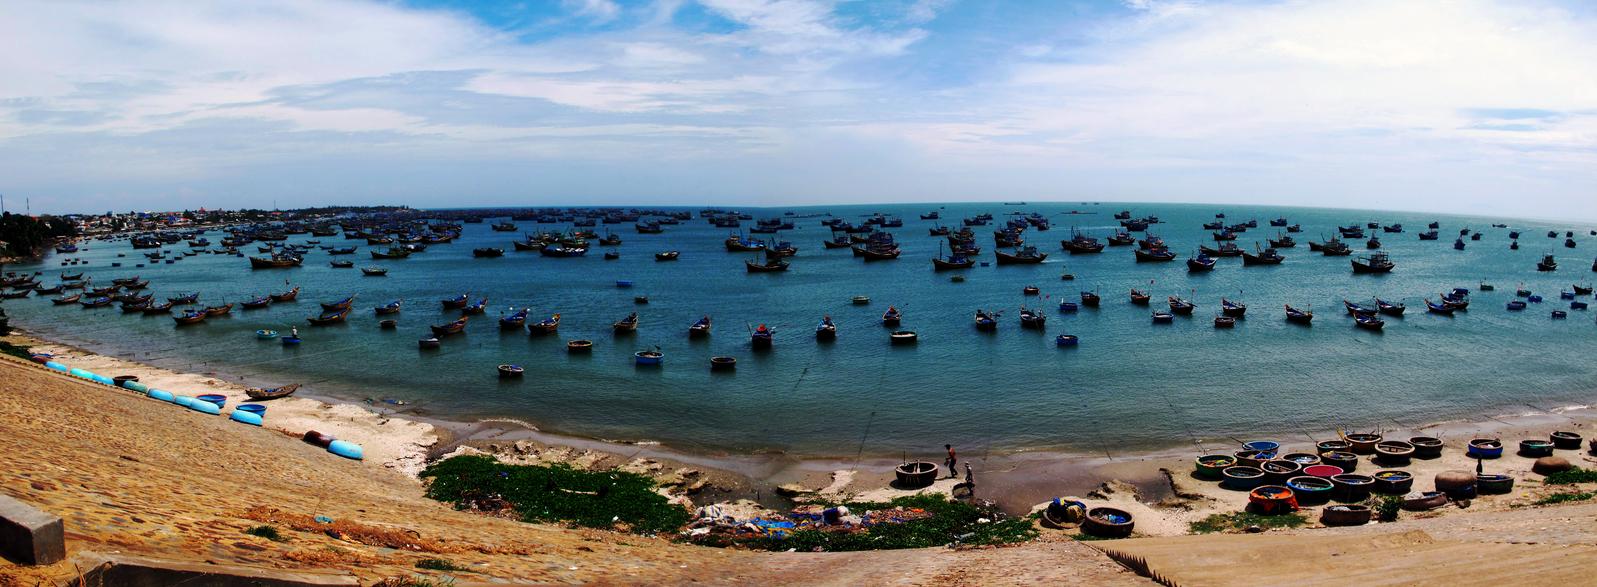 Вьетнам, Муй Нэ: фото и видео туристов